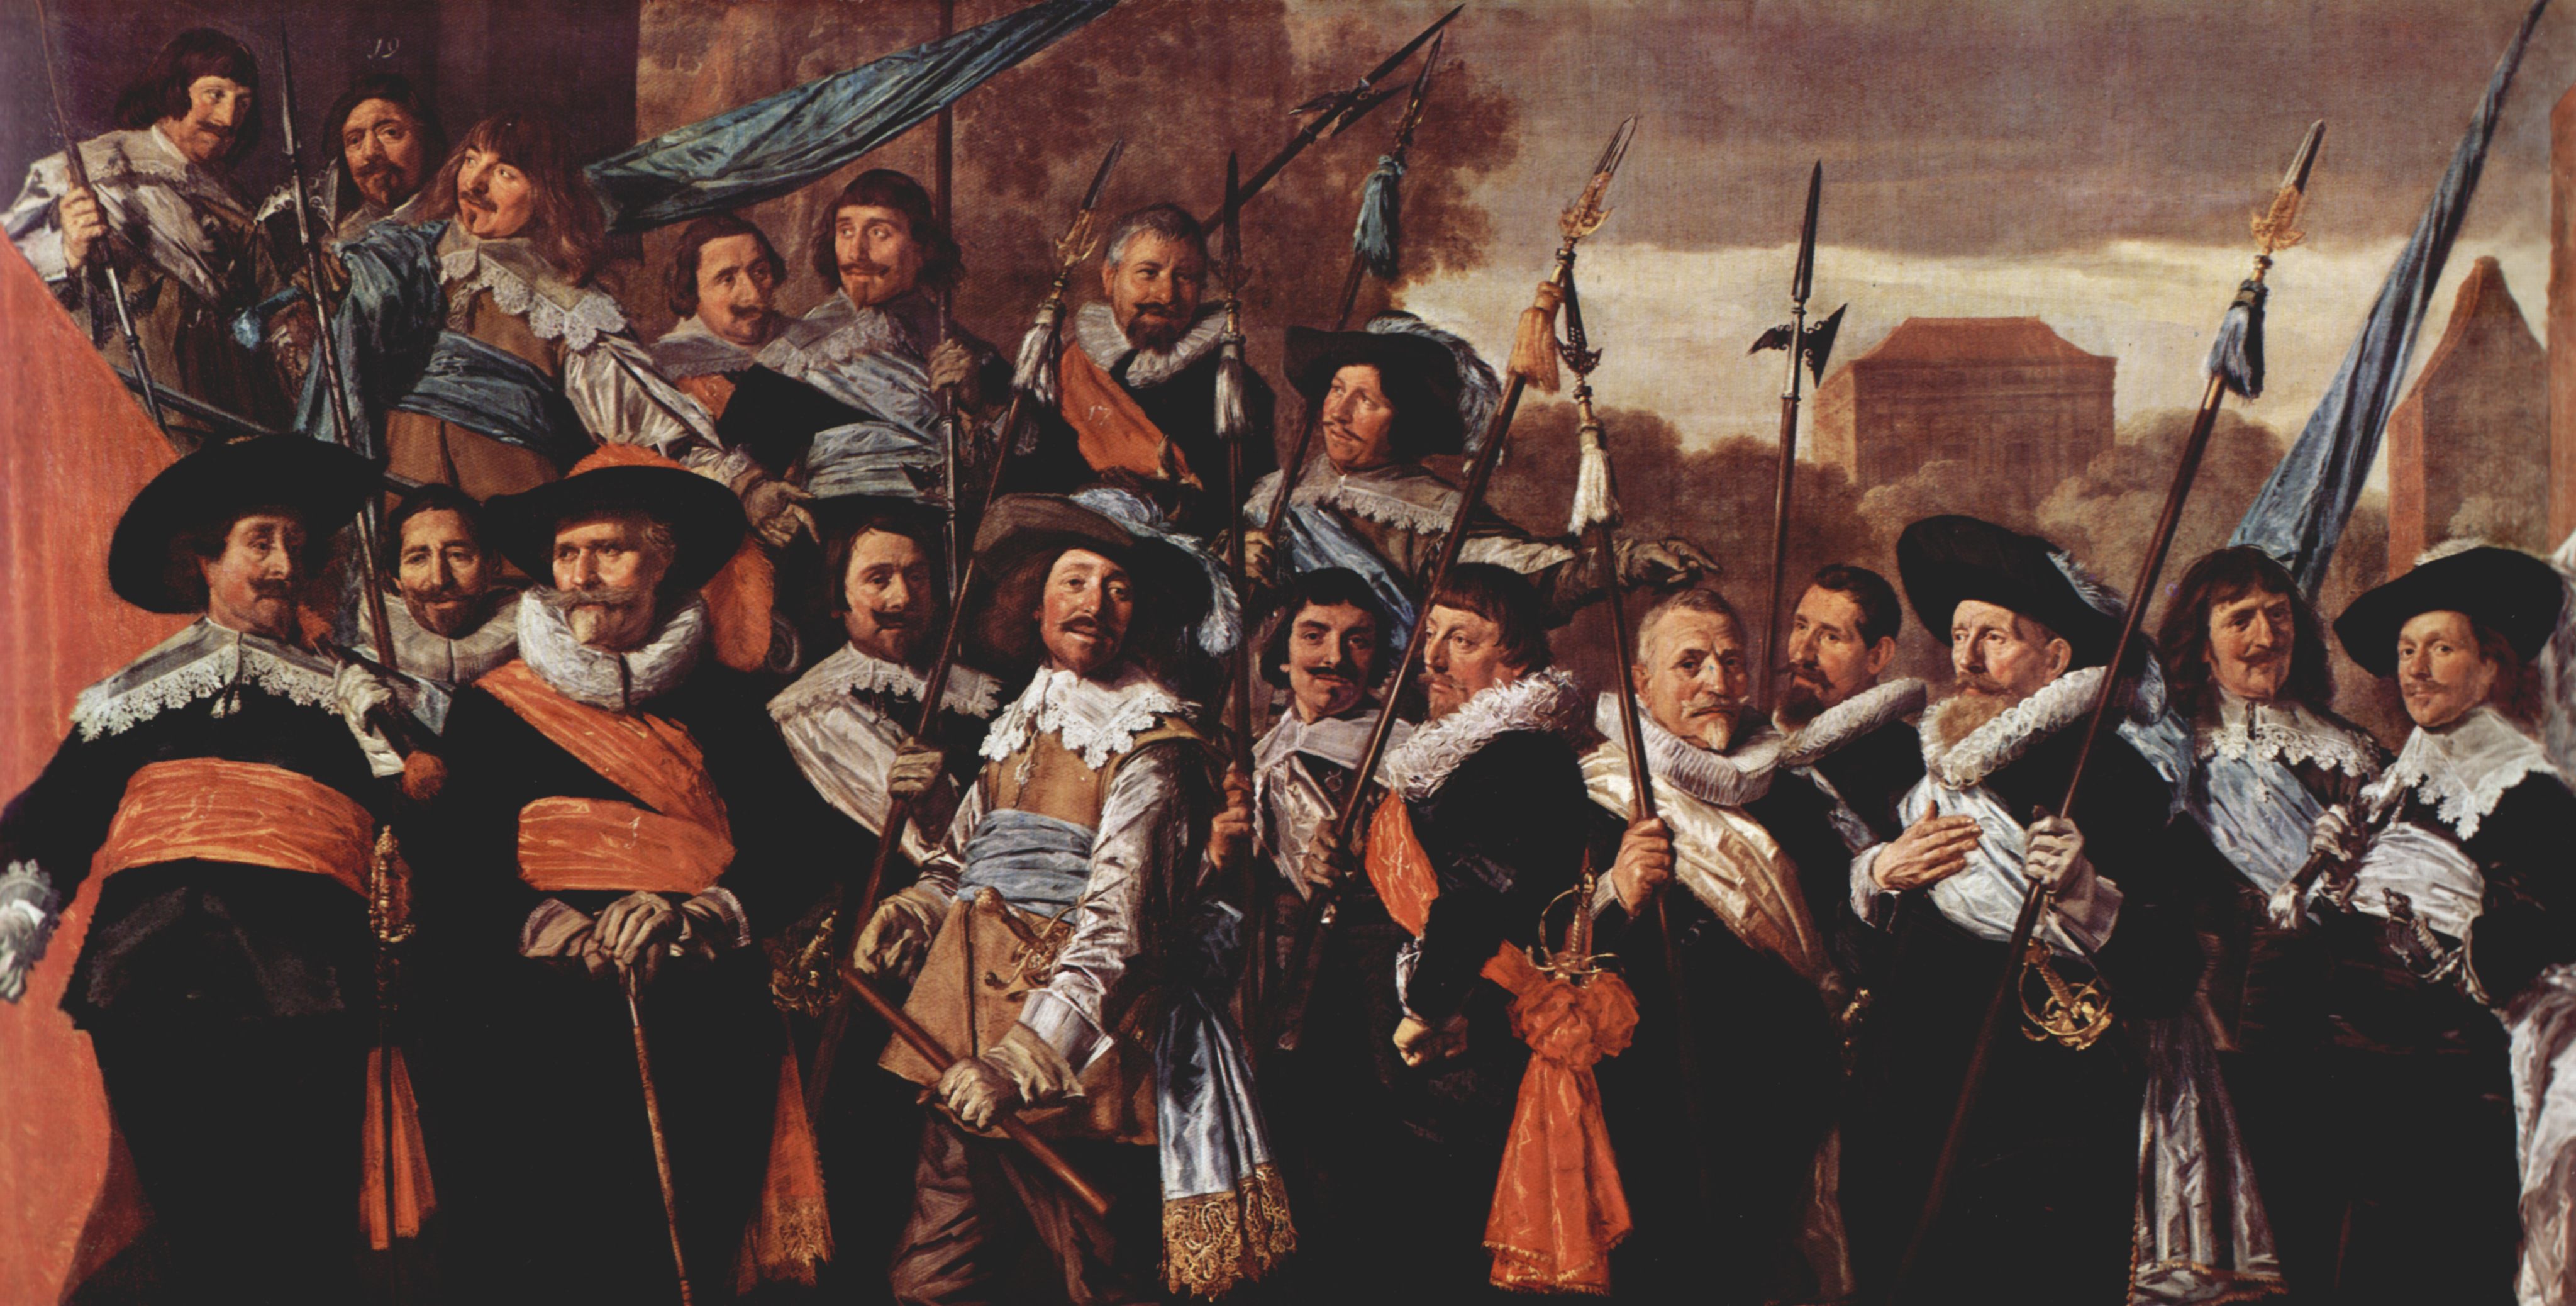 Frans Hals: Gruppenportrt der Schtzengilde St. Georg von Haarlem